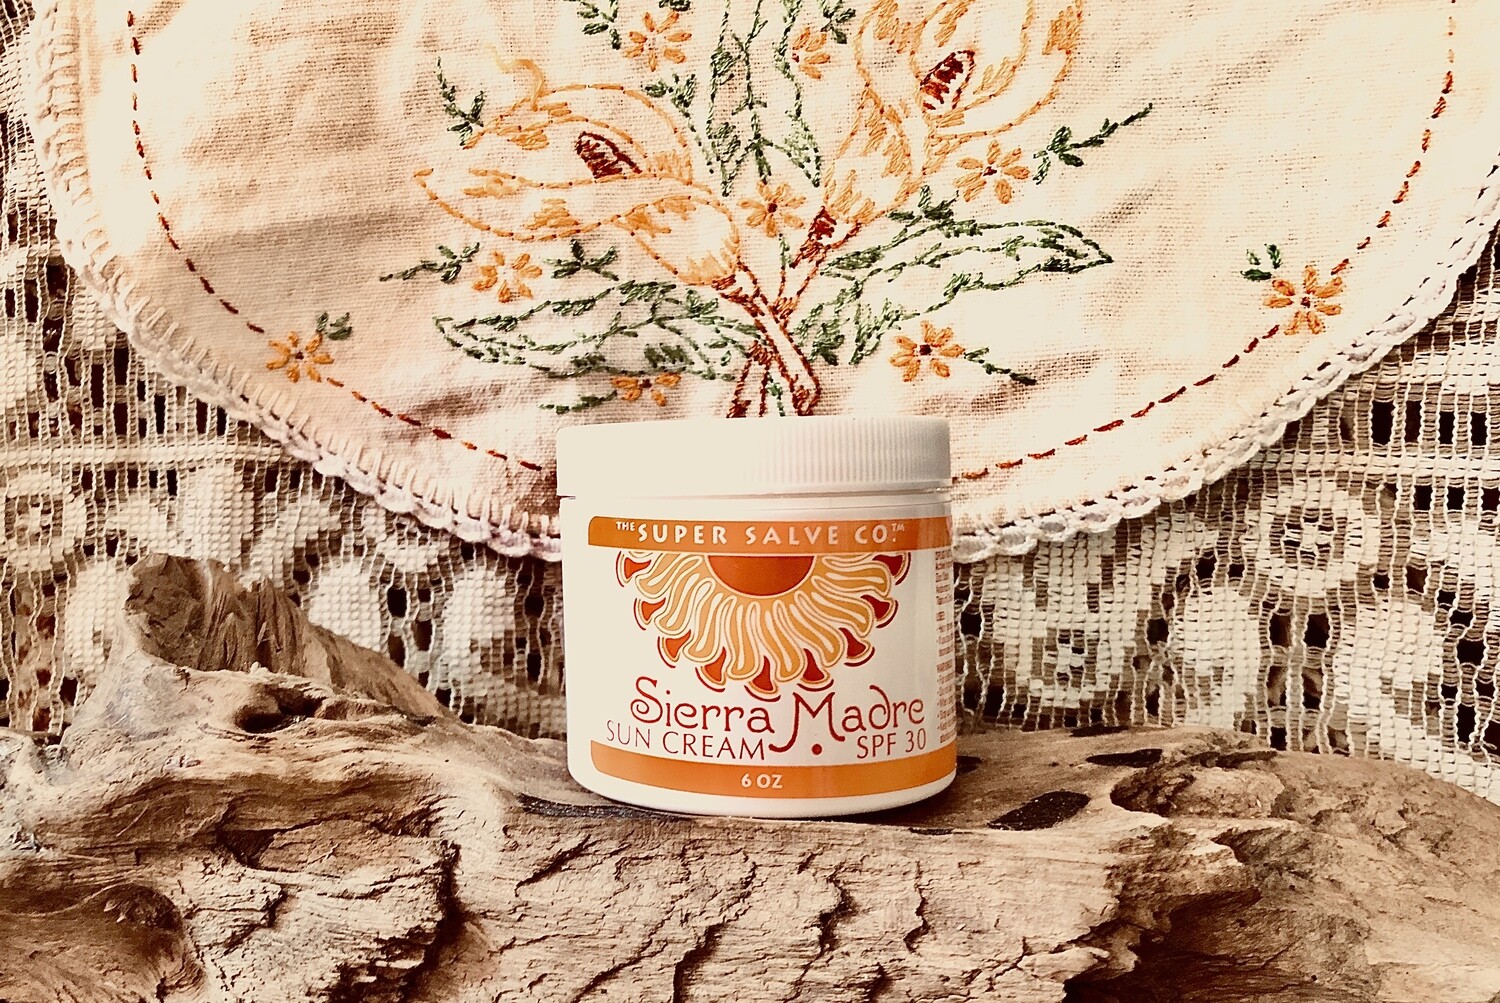 Sierra Madre Sun Cream SPF 30 by Super Salve 1.75 oz.